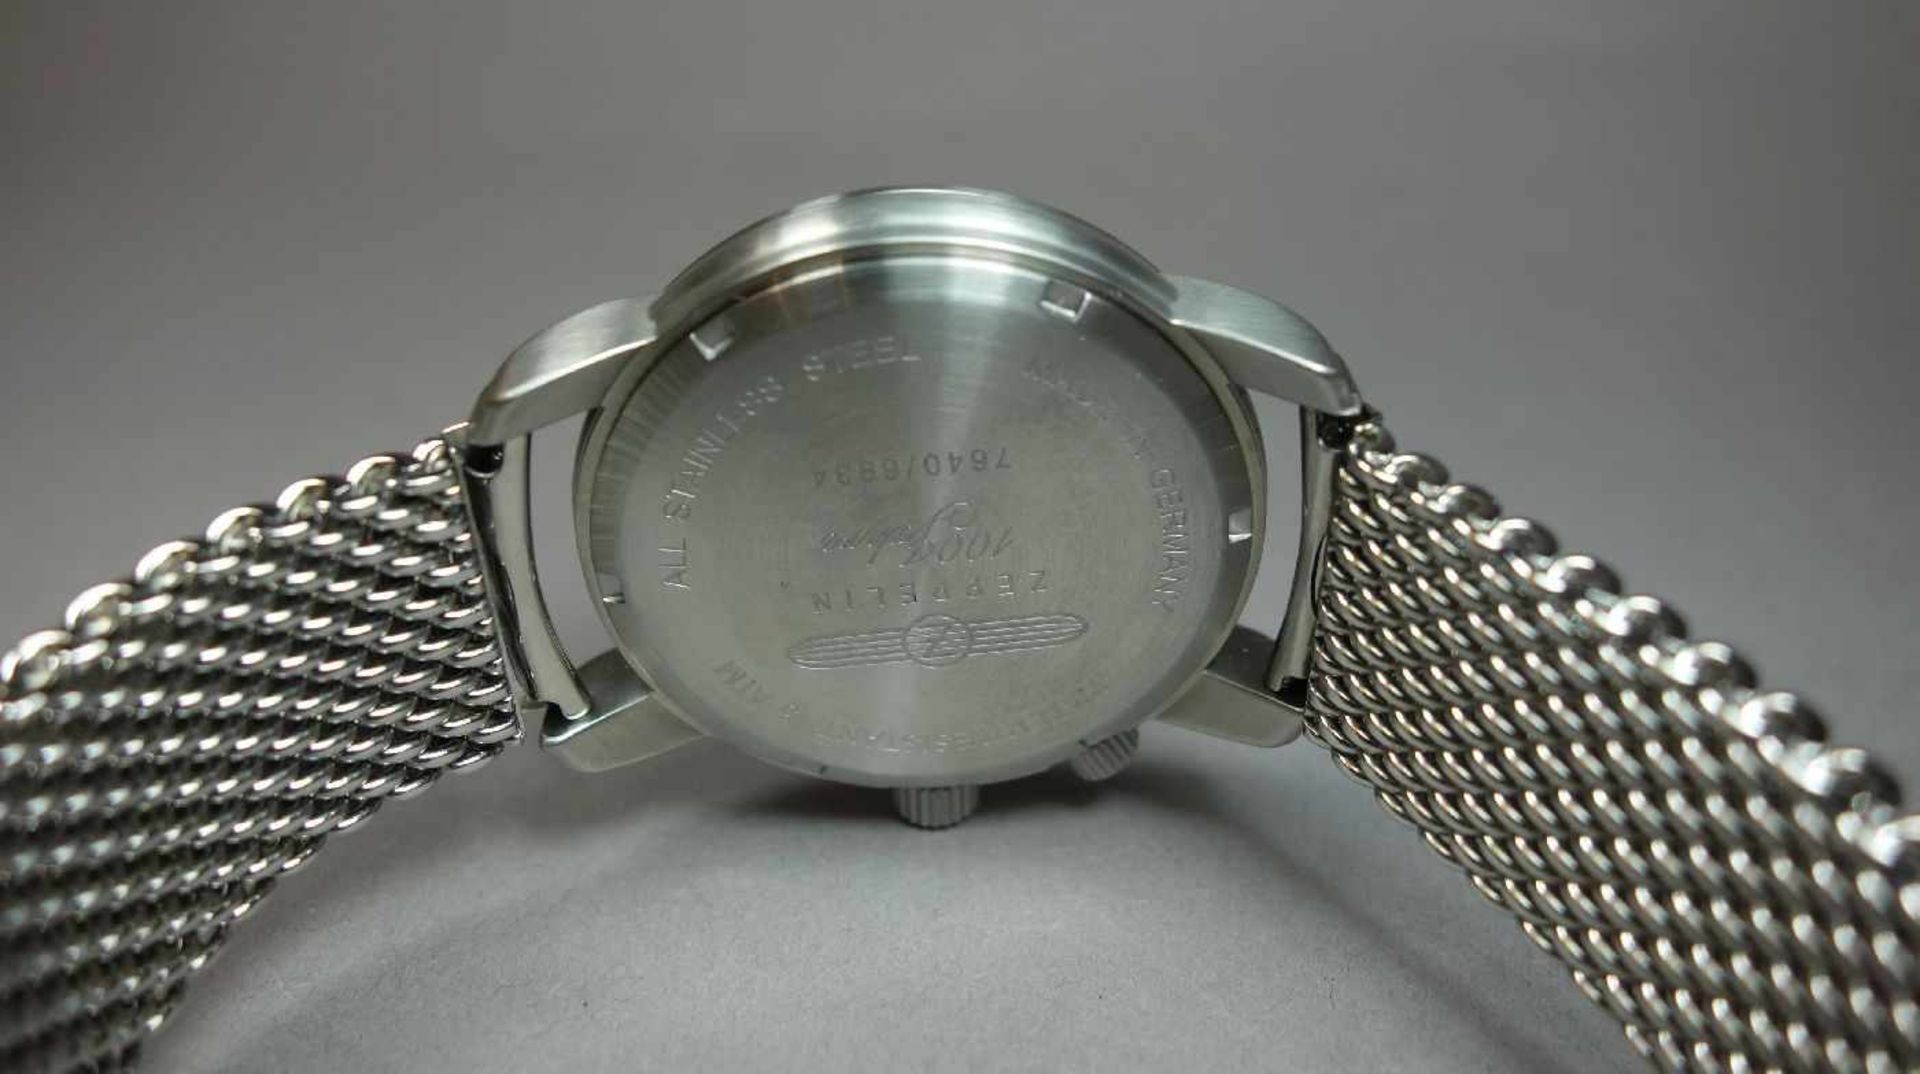 ARMBANDUHR ZEPPELIN 7640M-1 / wristwatch, Quartz-Uhr, Manufaktur Point tec Electronic GmbH / - Image 7 of 7